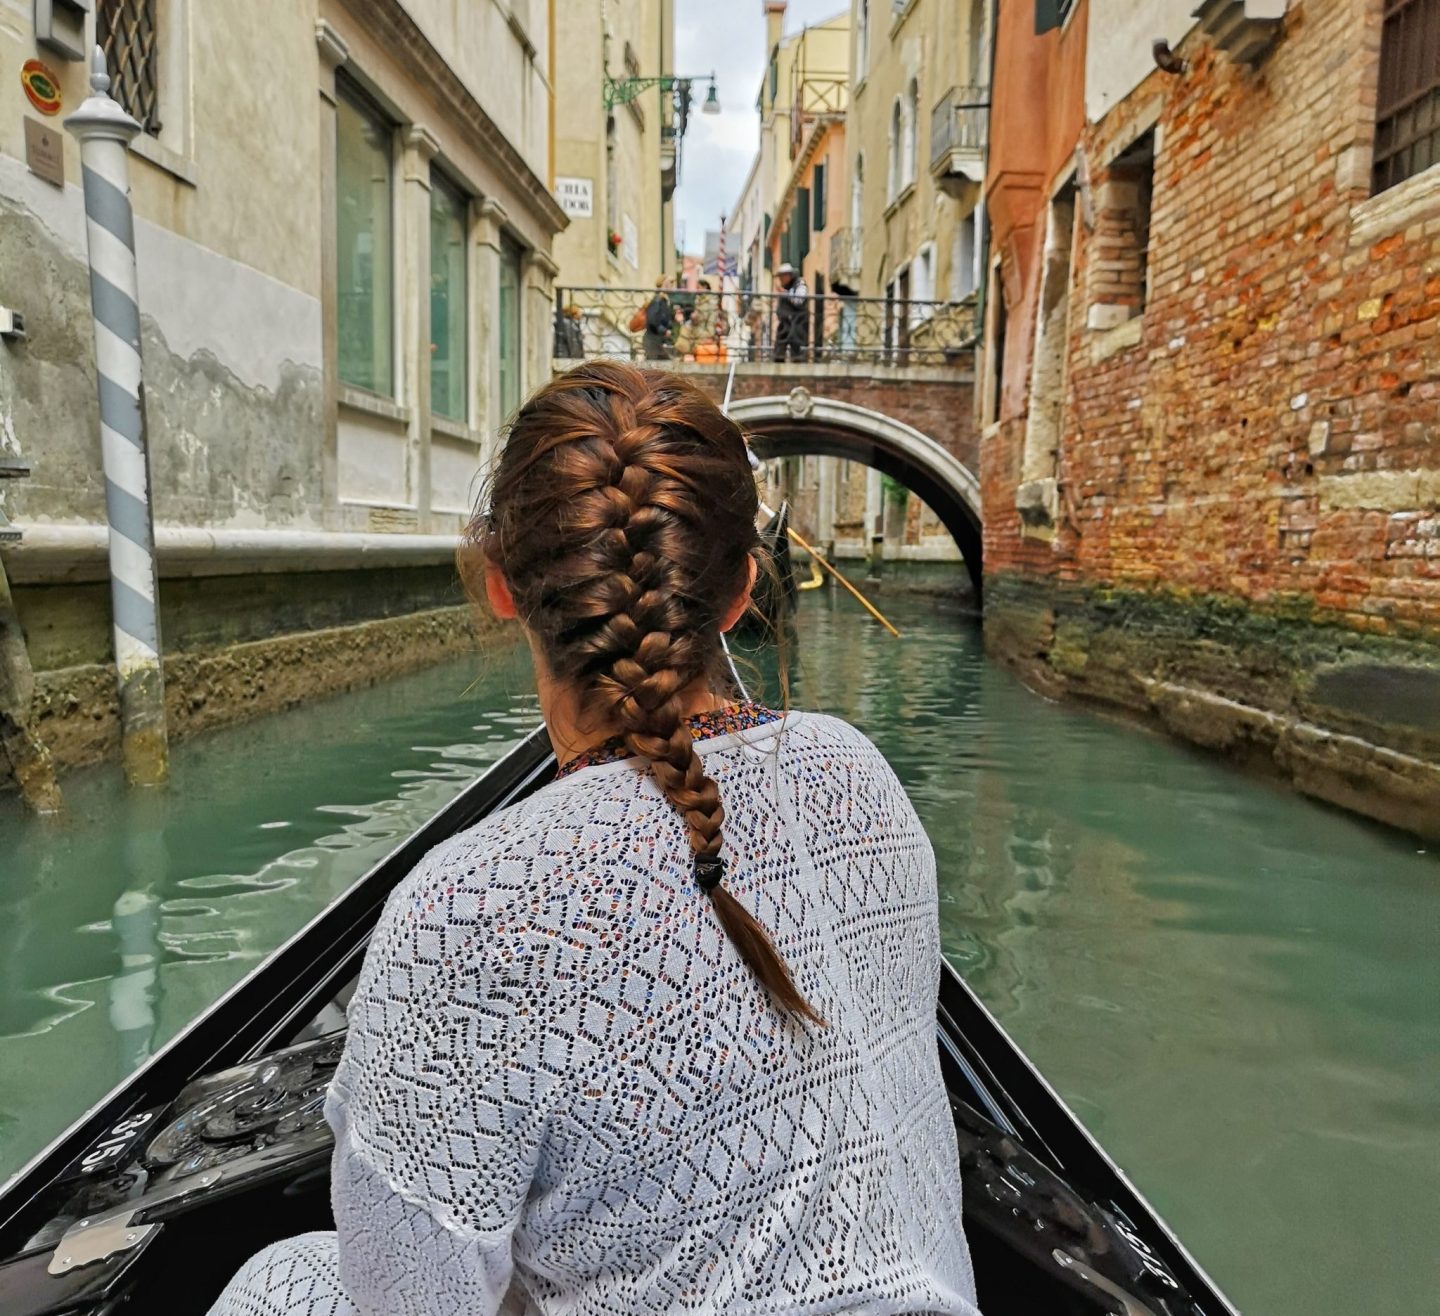 24 Hours in Venice, Italy - New Shades of Hippy. Gondola ride in Venice, Italy